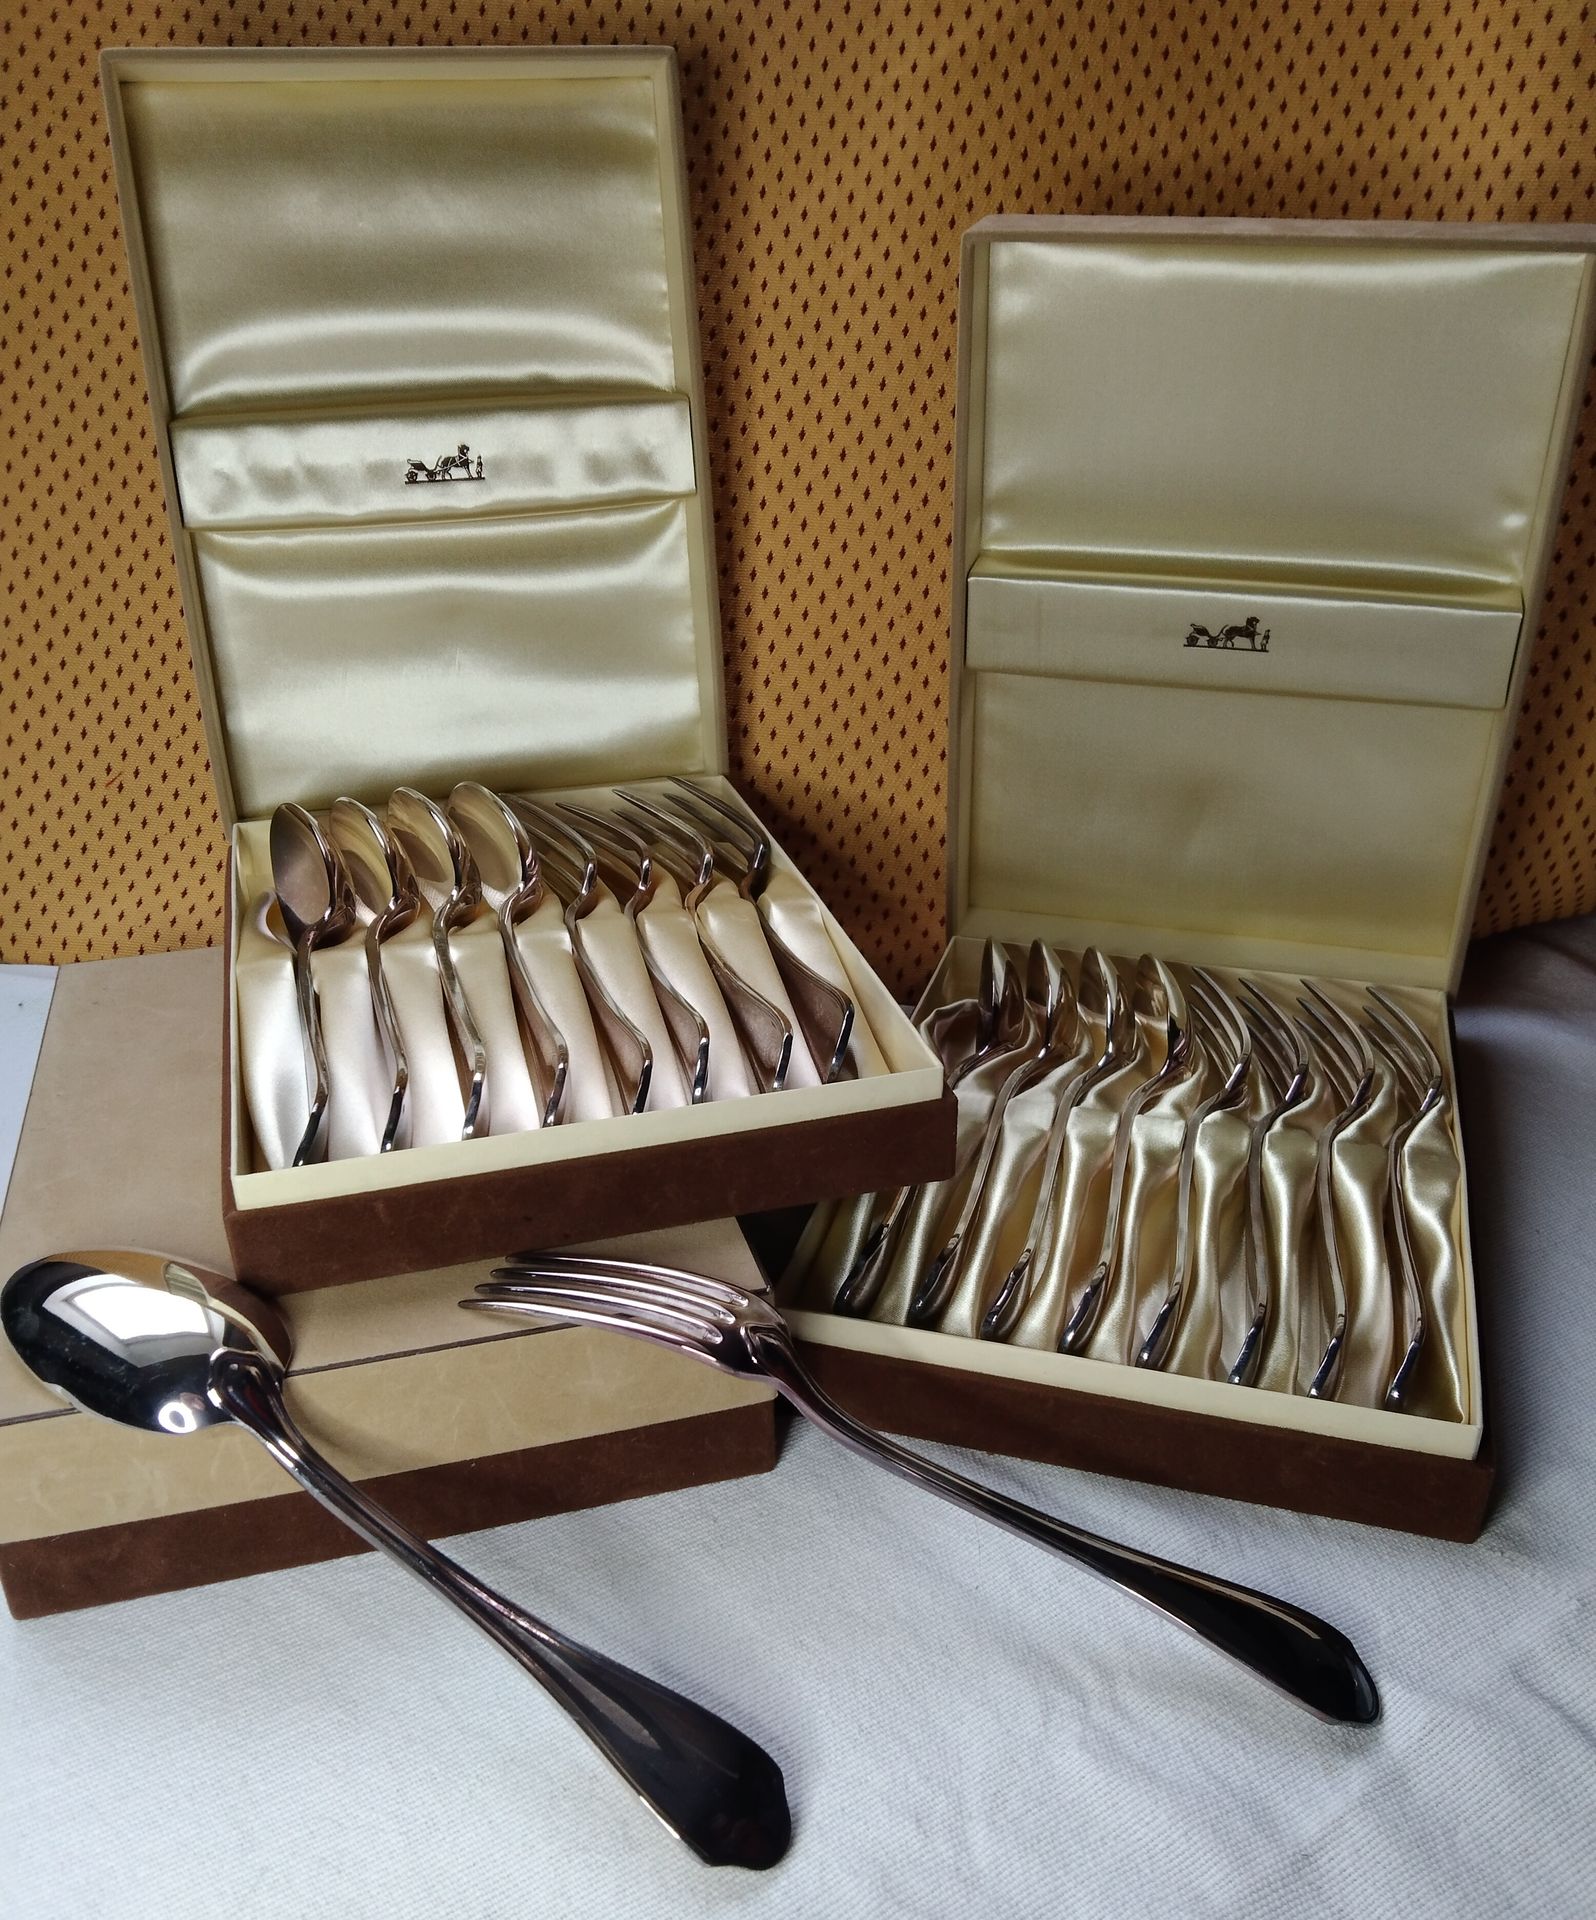 Null HERMES，一套 12 件镀银餐具，12 把汤匙和 12 把叉子，都装在三个原装盒子里。